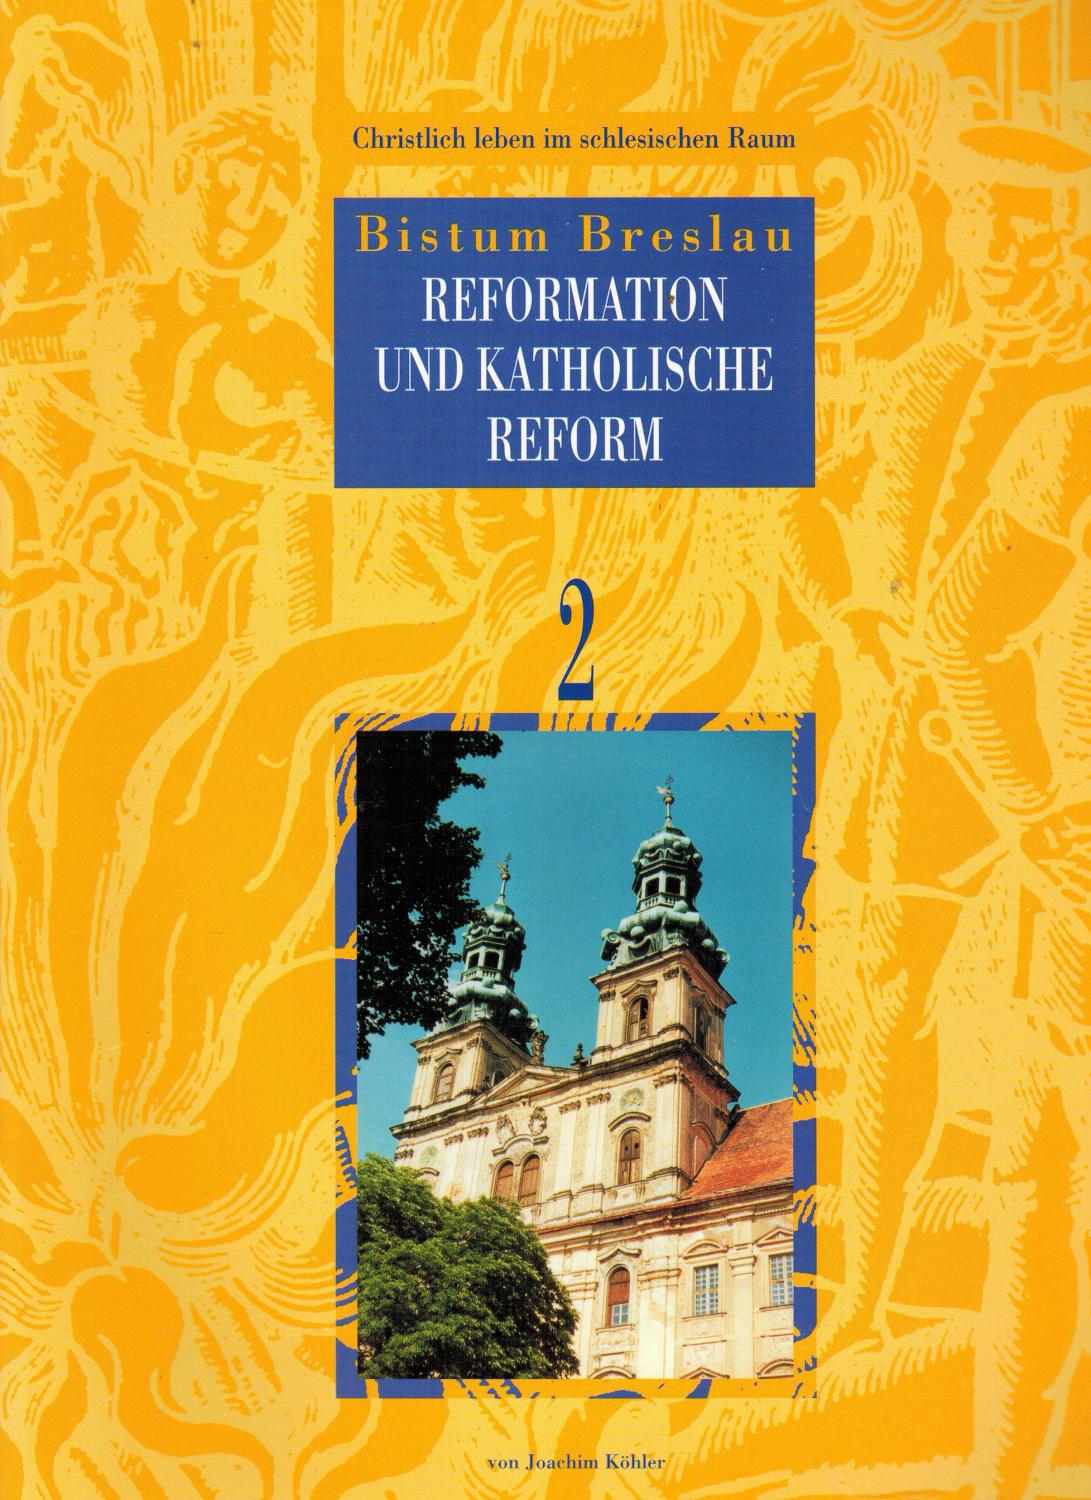 Bistum Breslau: Reformation und katholische Reform (Christlich leben im schlesischen Raum Band 2). - Köhler, Joachim